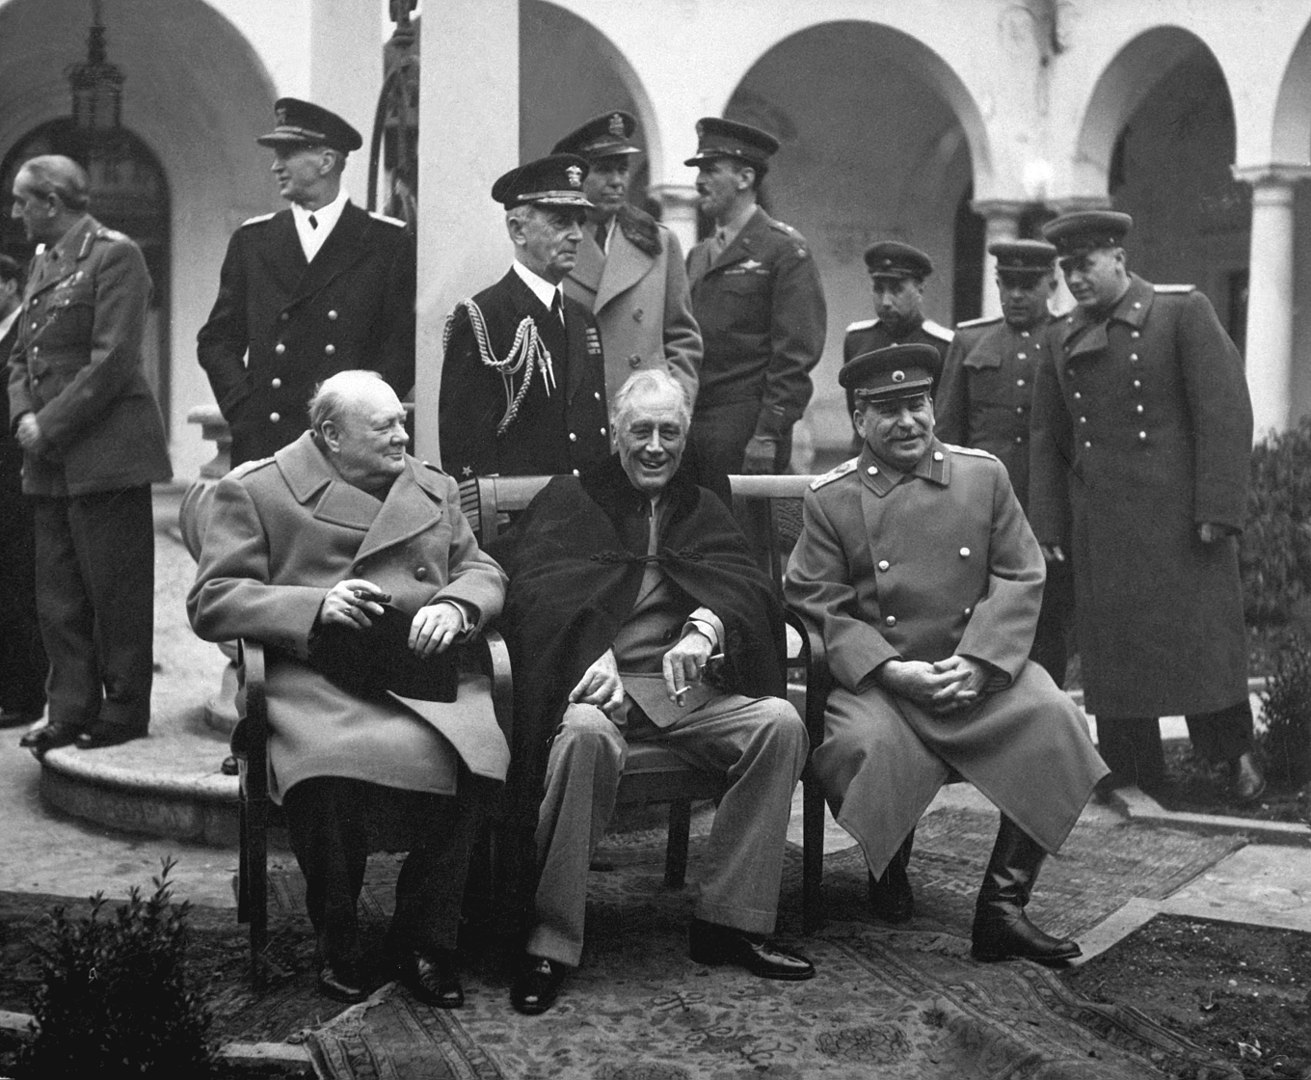 Fotó: Churchill, Roosevelt és Sztálin a konferencián. Andrew Cunningham, a brit flotta admirálisa és Charles Portal, a RAF marsallja Churchill mögött áll, William D. Leahy, az amerikai haditengerészet admirálisa pedig Roosevelt mögött<br /><br />A jaltai konferencia (kódnevén Argonauta konferencia) 1945. február 4. és február 11. között zajlott le a szövetséges államok vezetői között. Sorrendben ez volt a második találkozó a három nagyhatalom, az Amerikai Egyesült Államok, Egyesült Királyság és a Szovjetunió vezetői között a háború folyamán. Országaikat Franklin D. Roosevelt, Winston Churchill és Joszif Visszarionovics Sztálin képviselte.